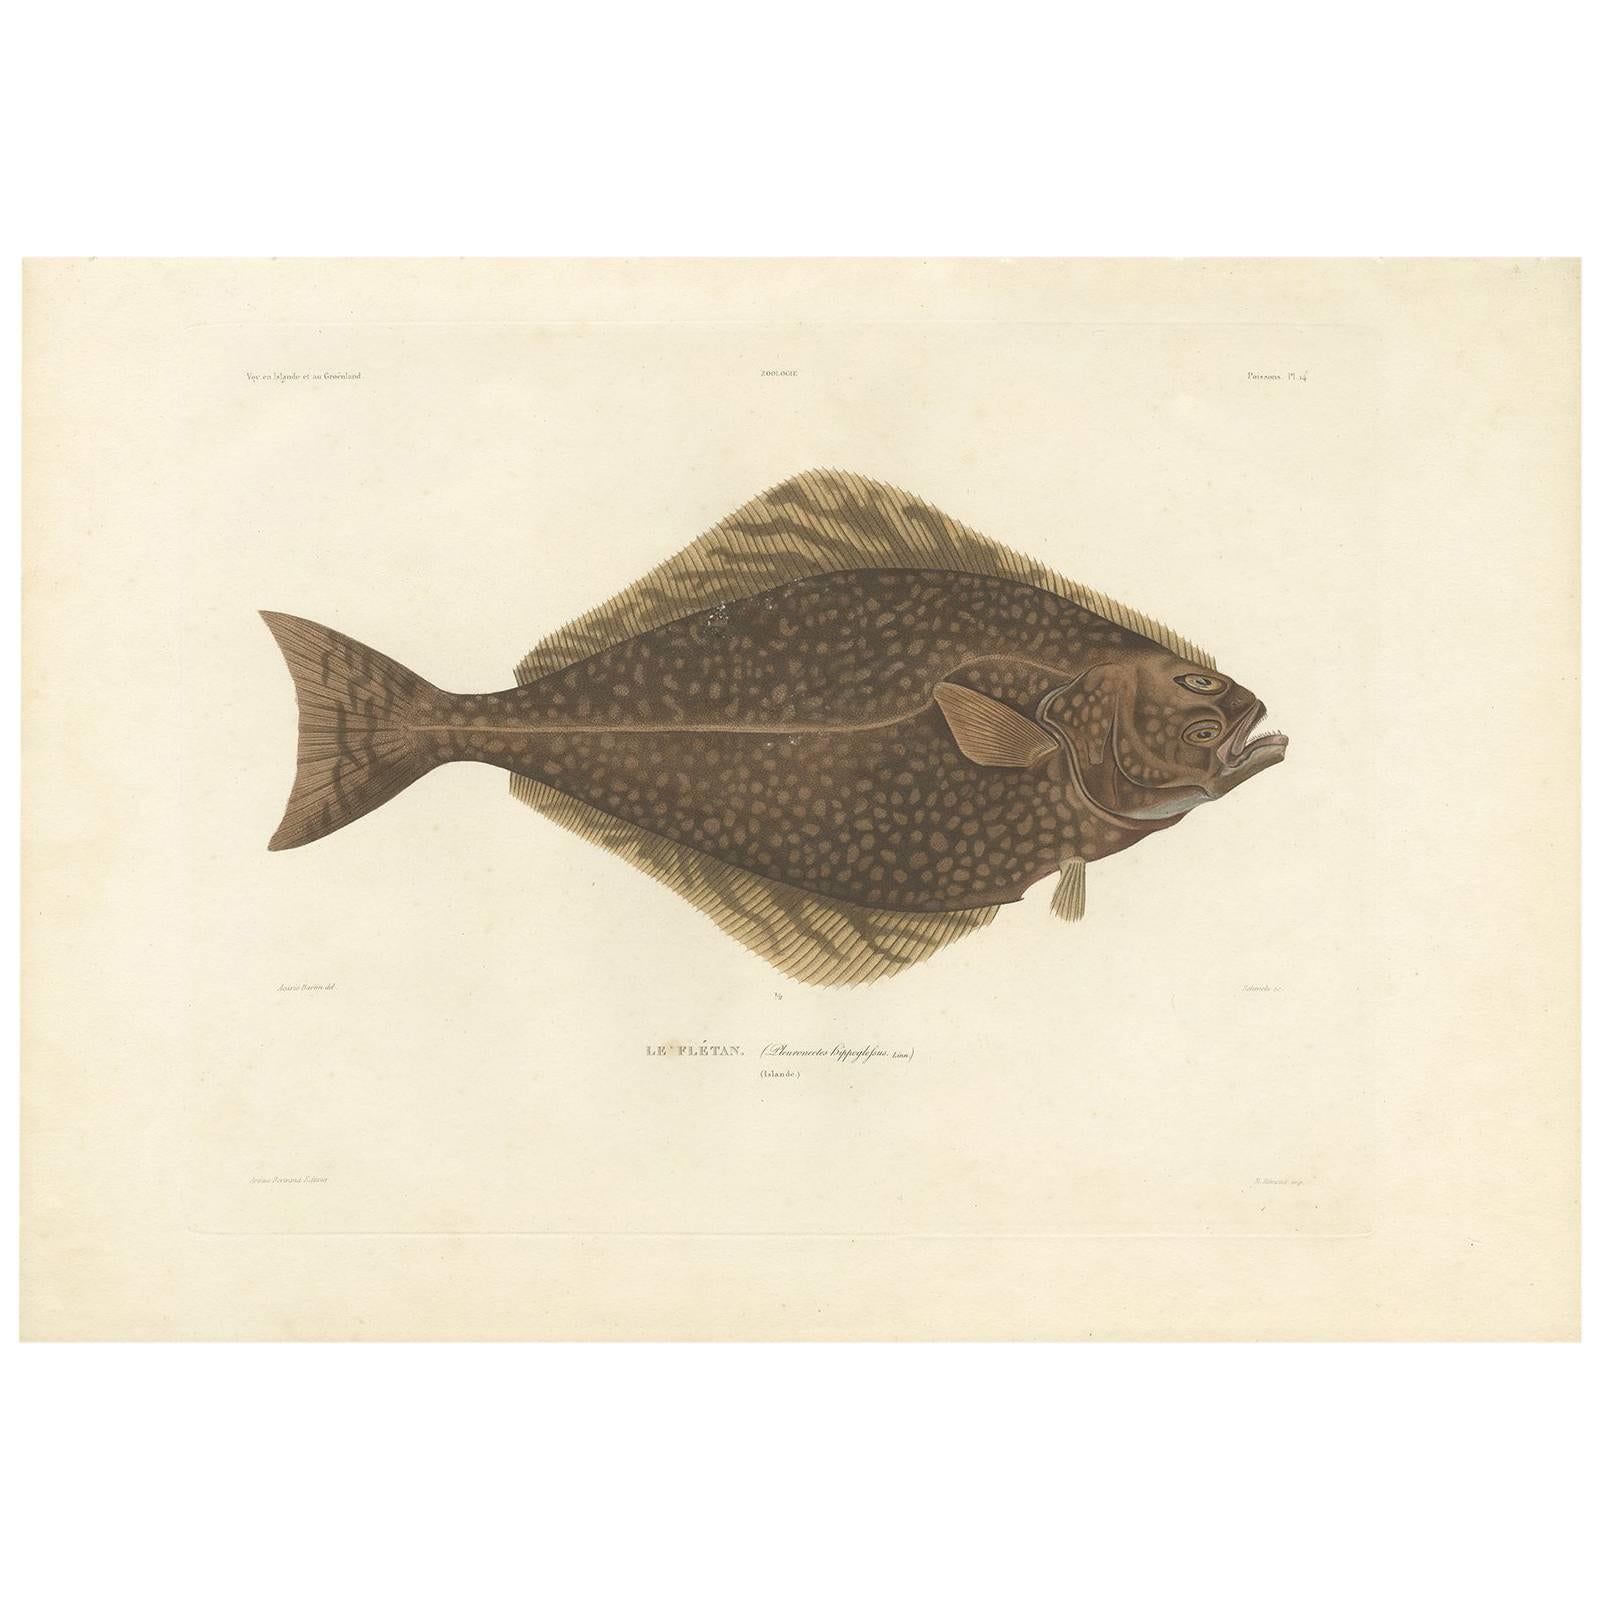 Antique Fish Print of the Atlantic Halibut by M.P. Gaimard, 1842